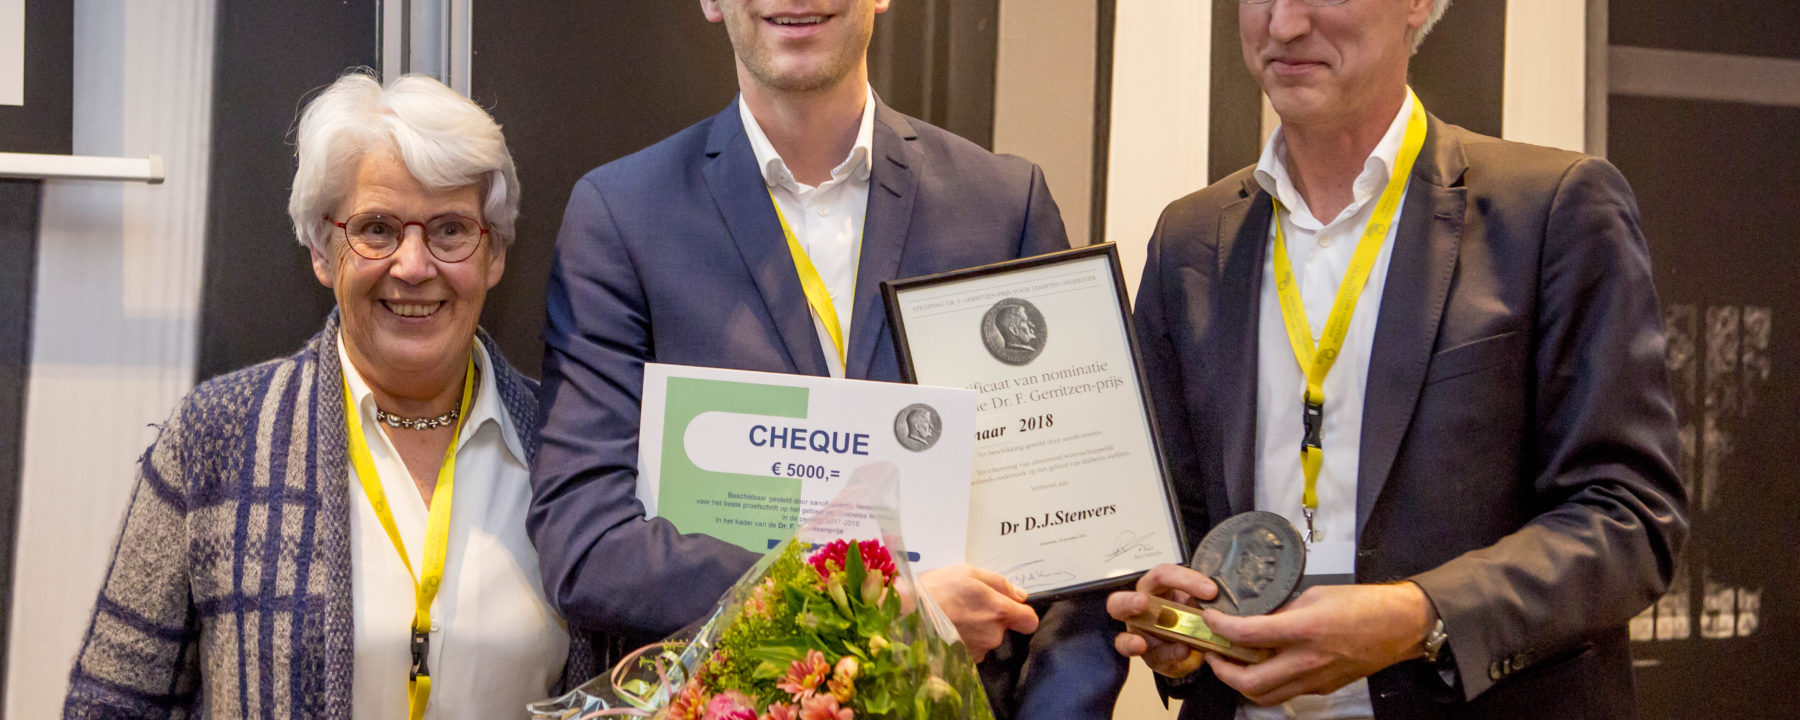 Endocrinoloog in opleiding wint Dr. F. Gerritzen prijs  